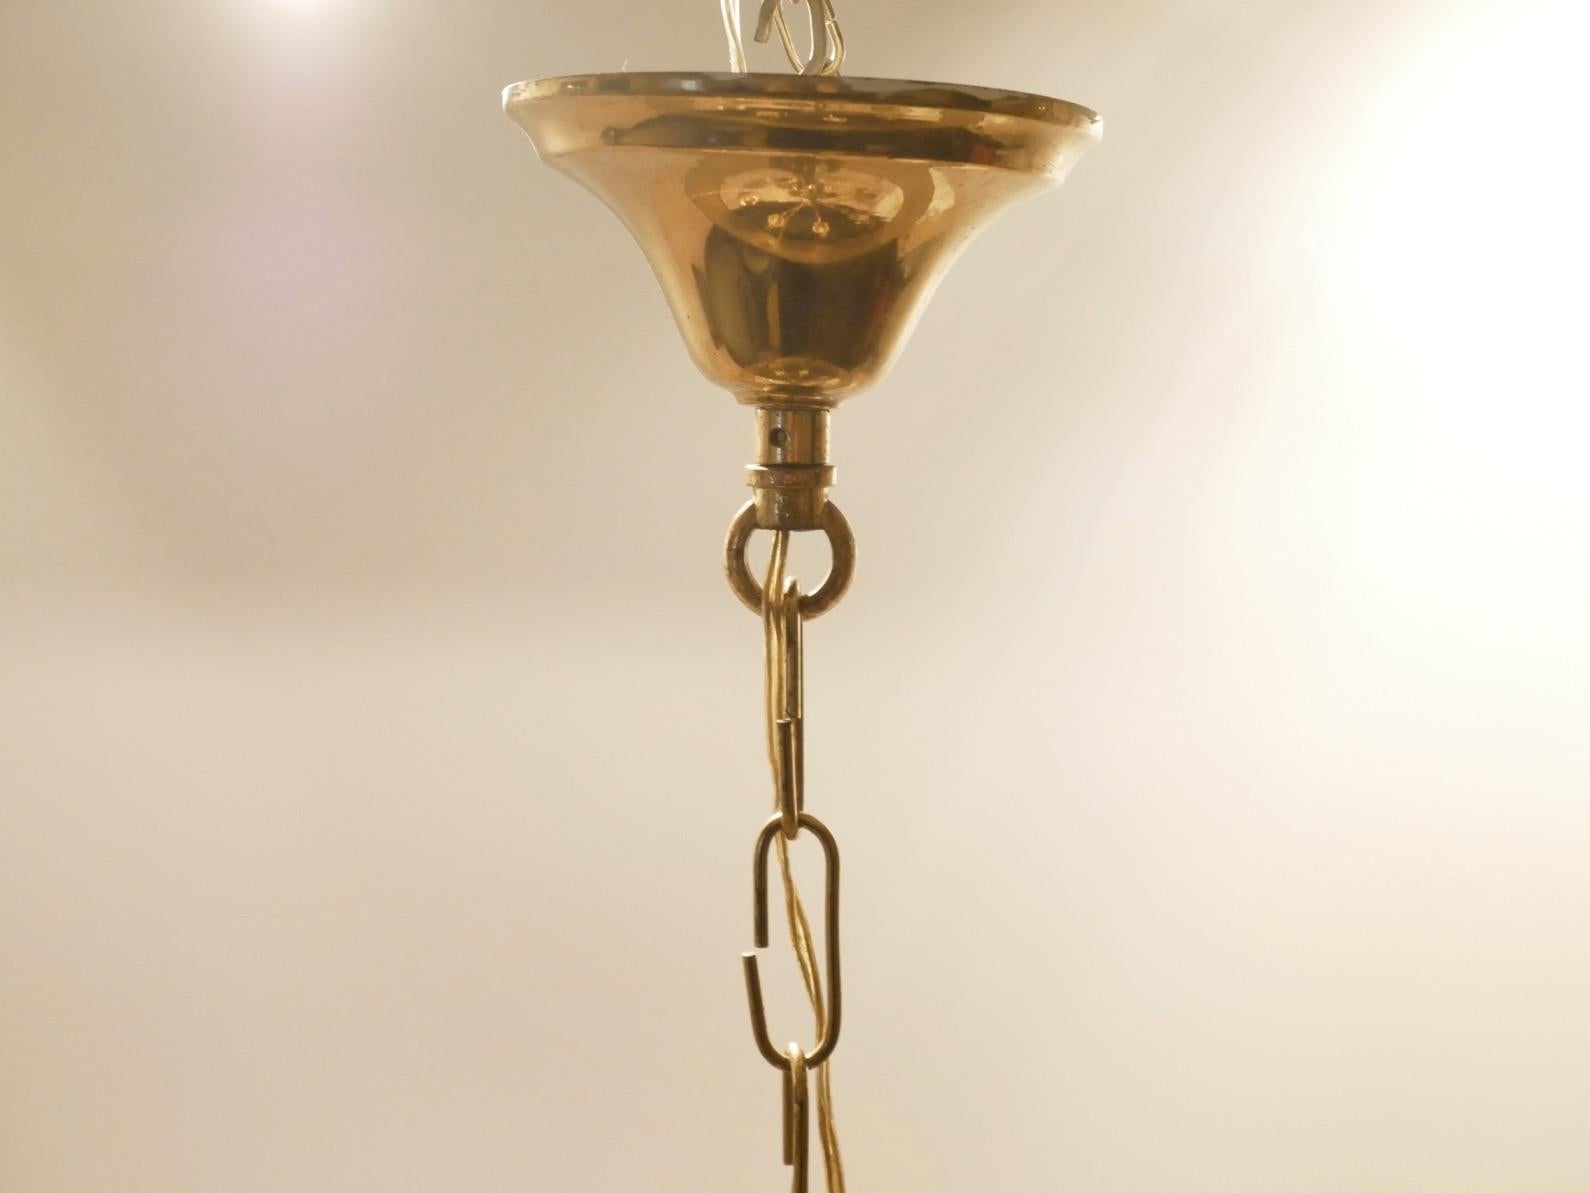 Maison Jansen Style Brass Candelabra Chandelier, 1940s For Sale 4